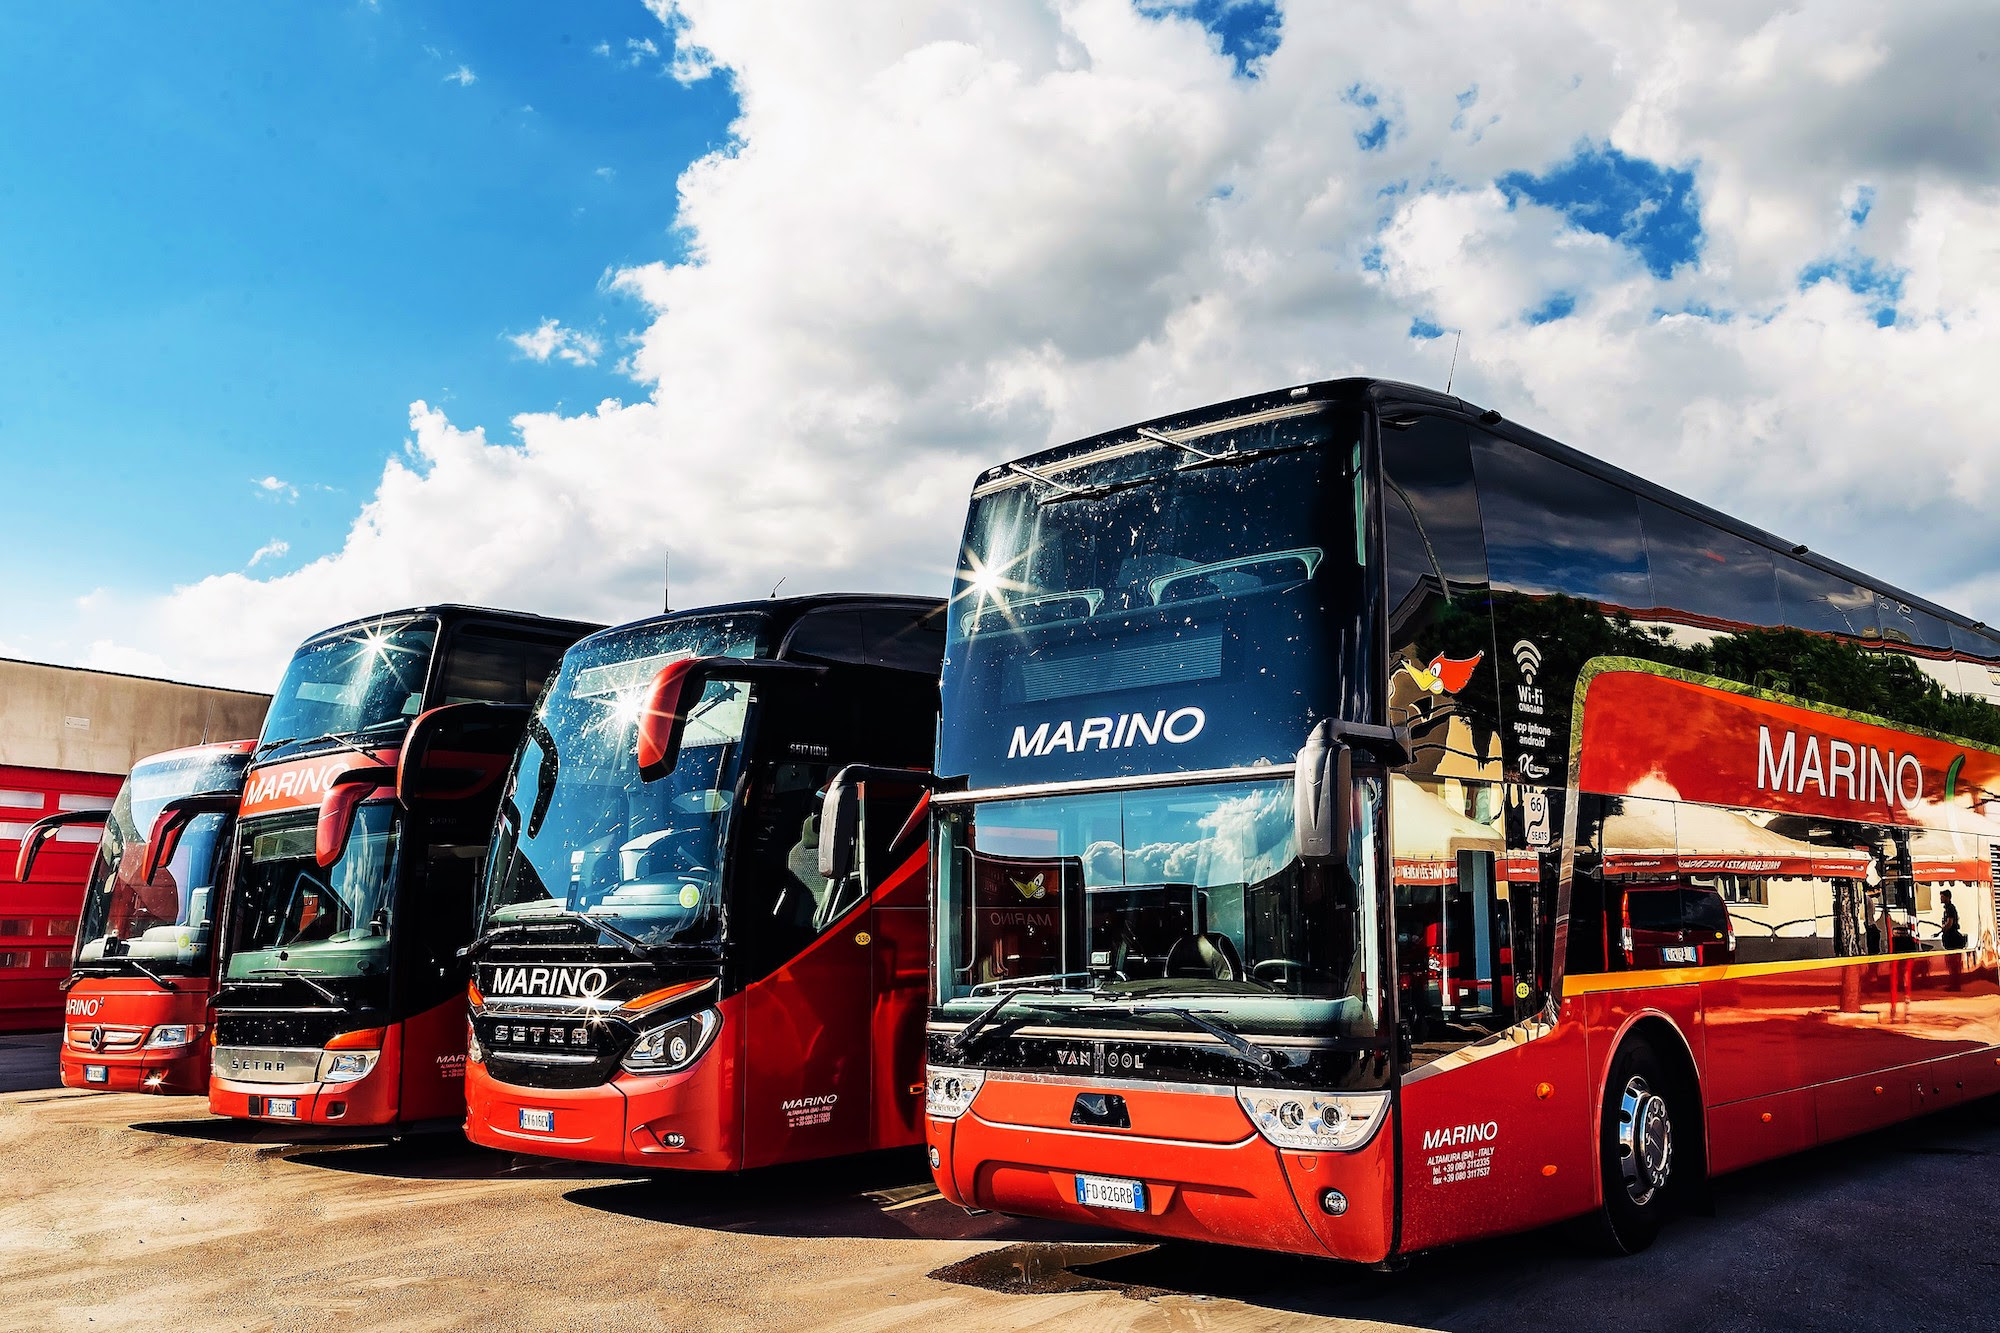 Mobilità integrata bus e taxi, partnership tra MarinoBus e Wetaxi: sconti per chi parte o arriva in bus a Milano, Napoli, Roma e Torino